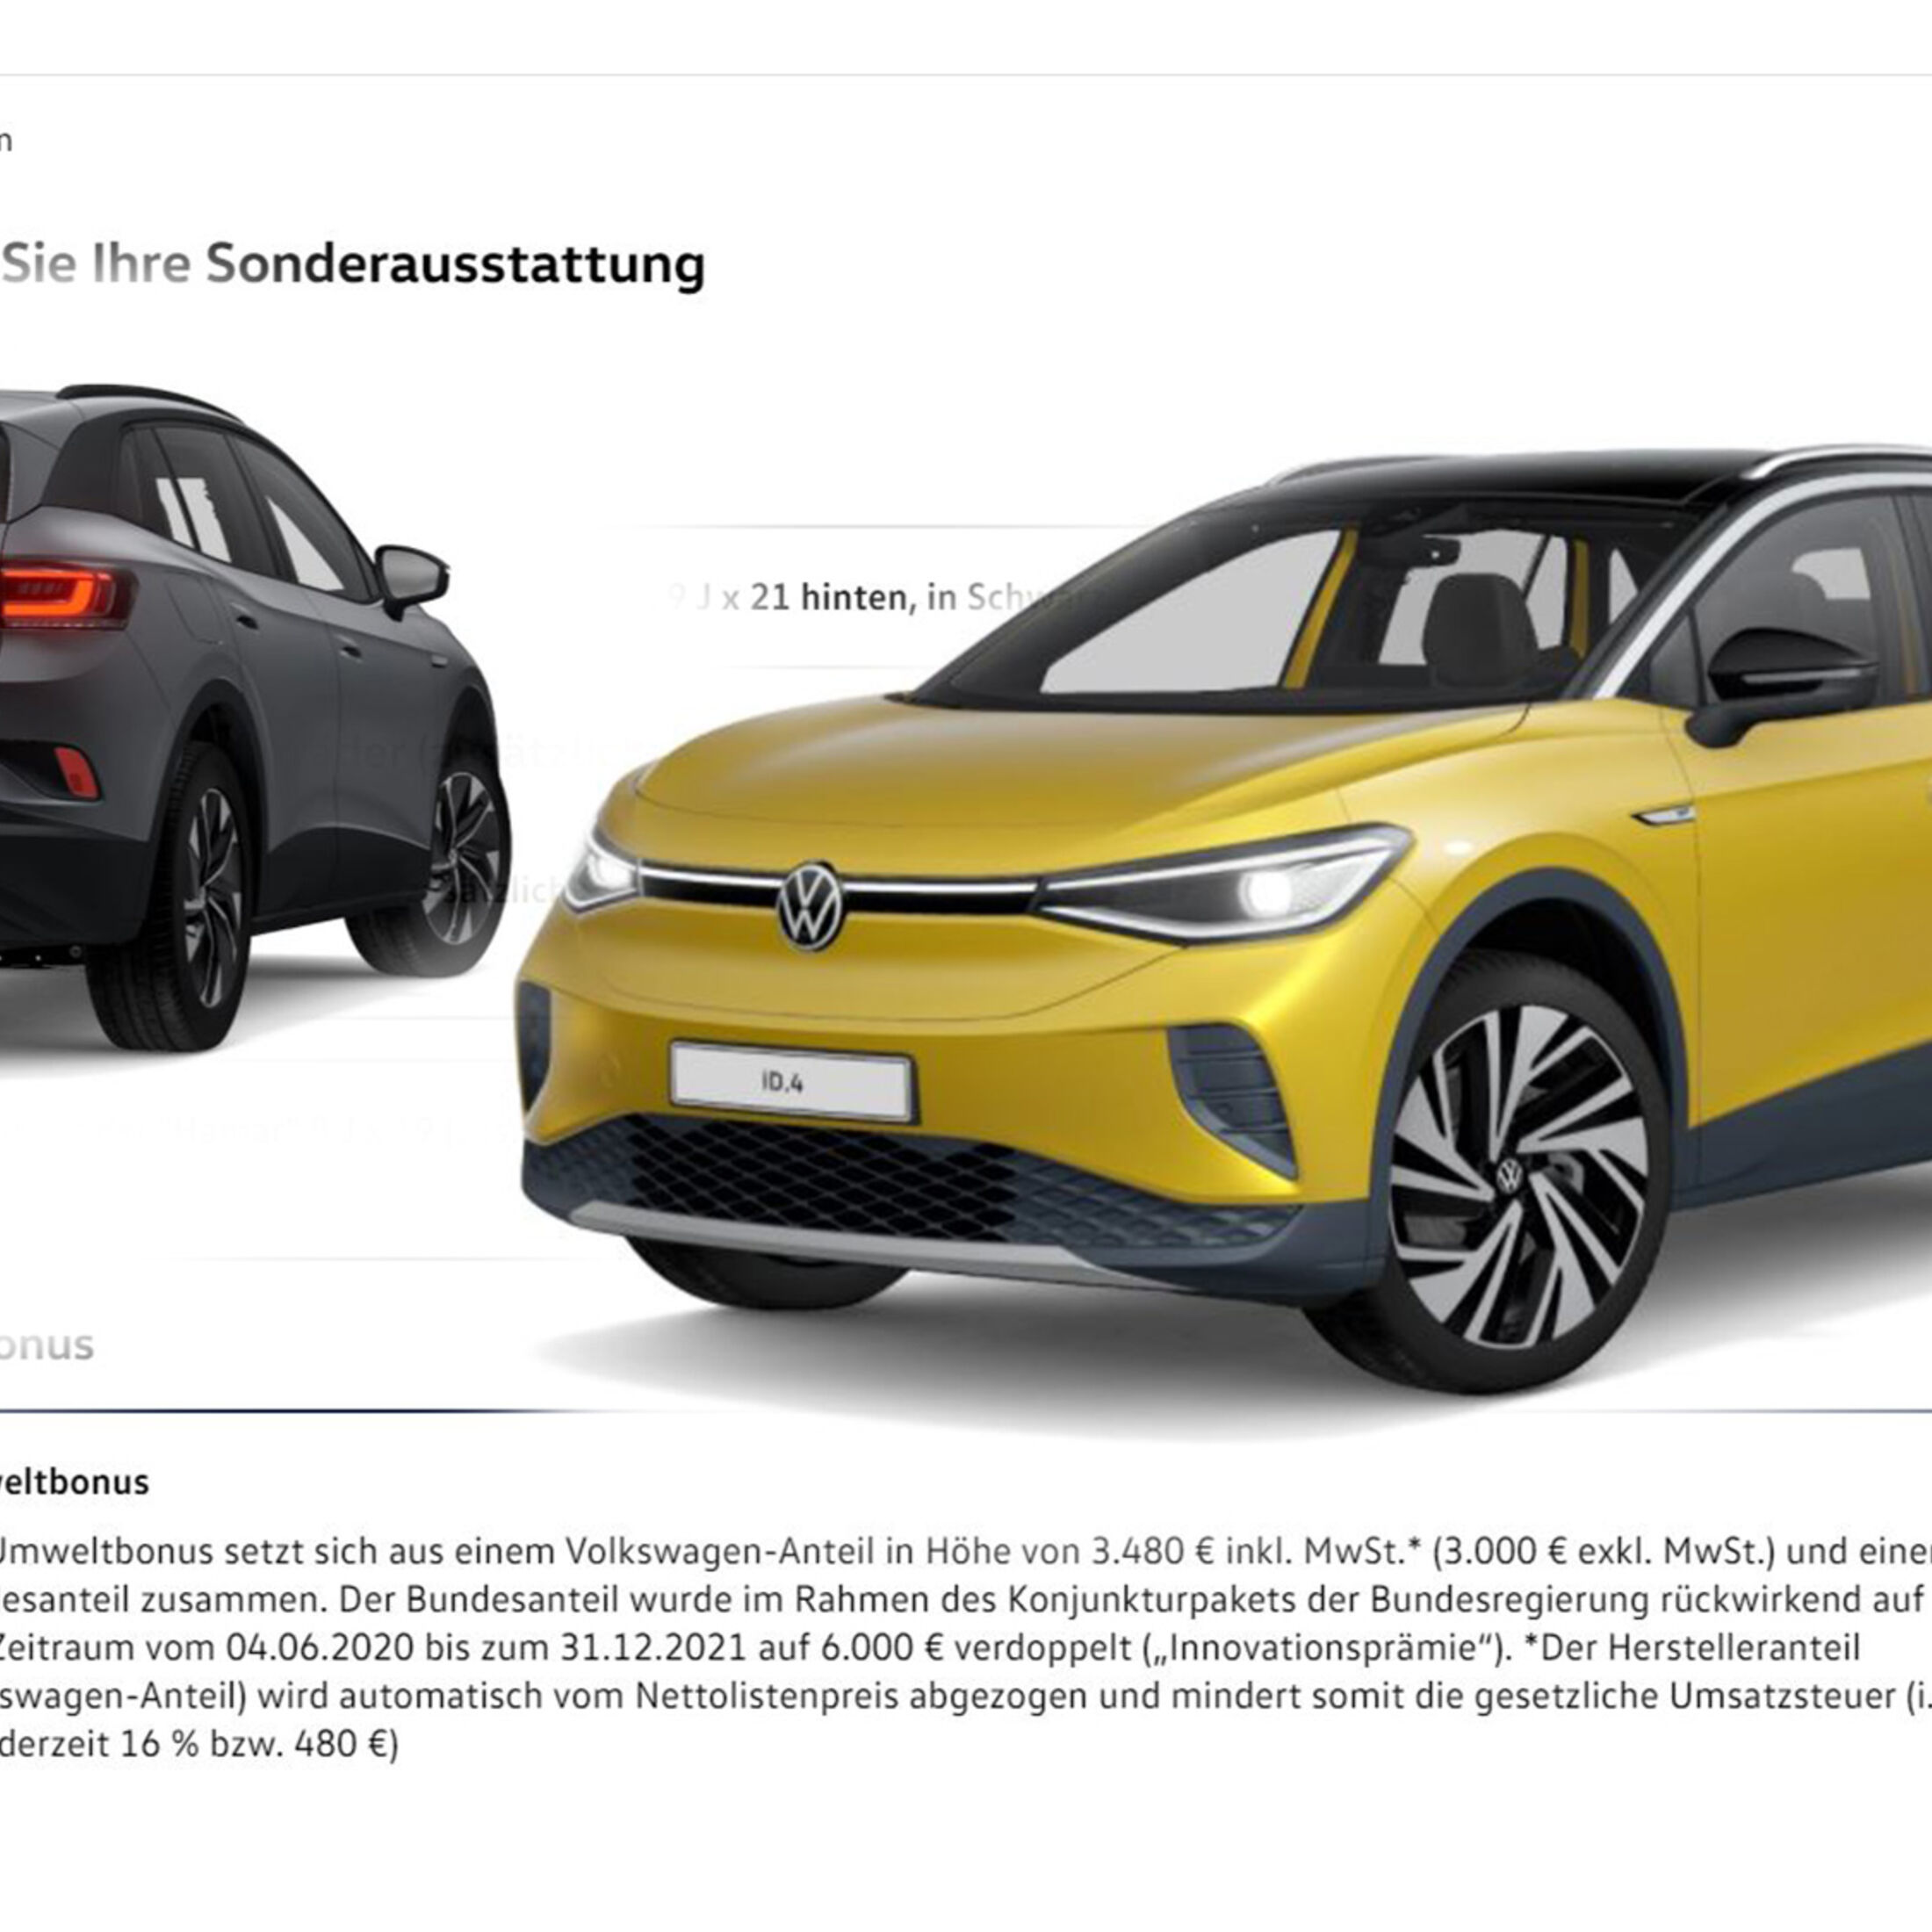 Hohe Reichweite, schnelles Laden: VW erklärt Batteriesystem von ID